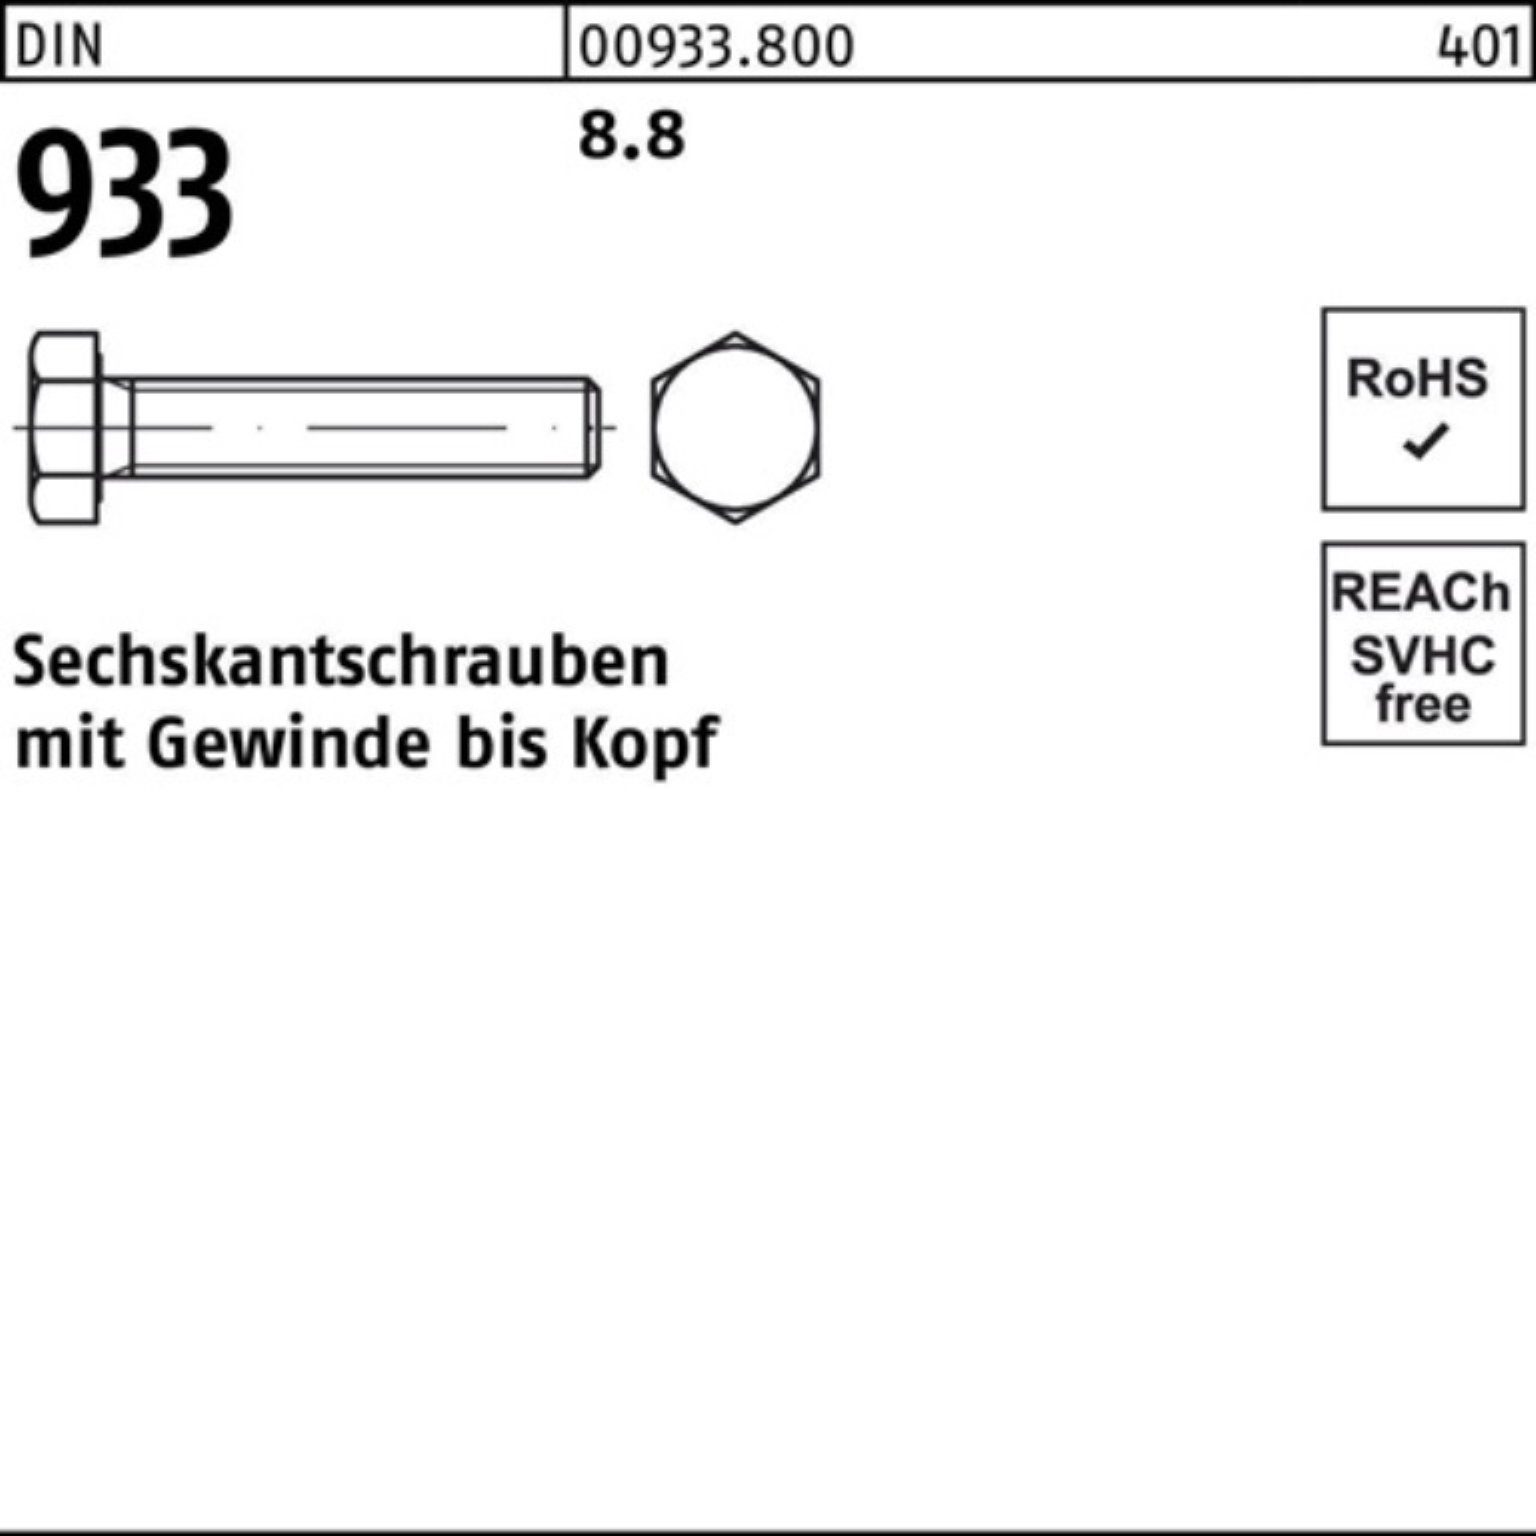 DIN Sechskantschraube Reyher Sechskantschraube 933 Pack DIN 100er VG 8.8 M4x 100 6 8 933 Stück